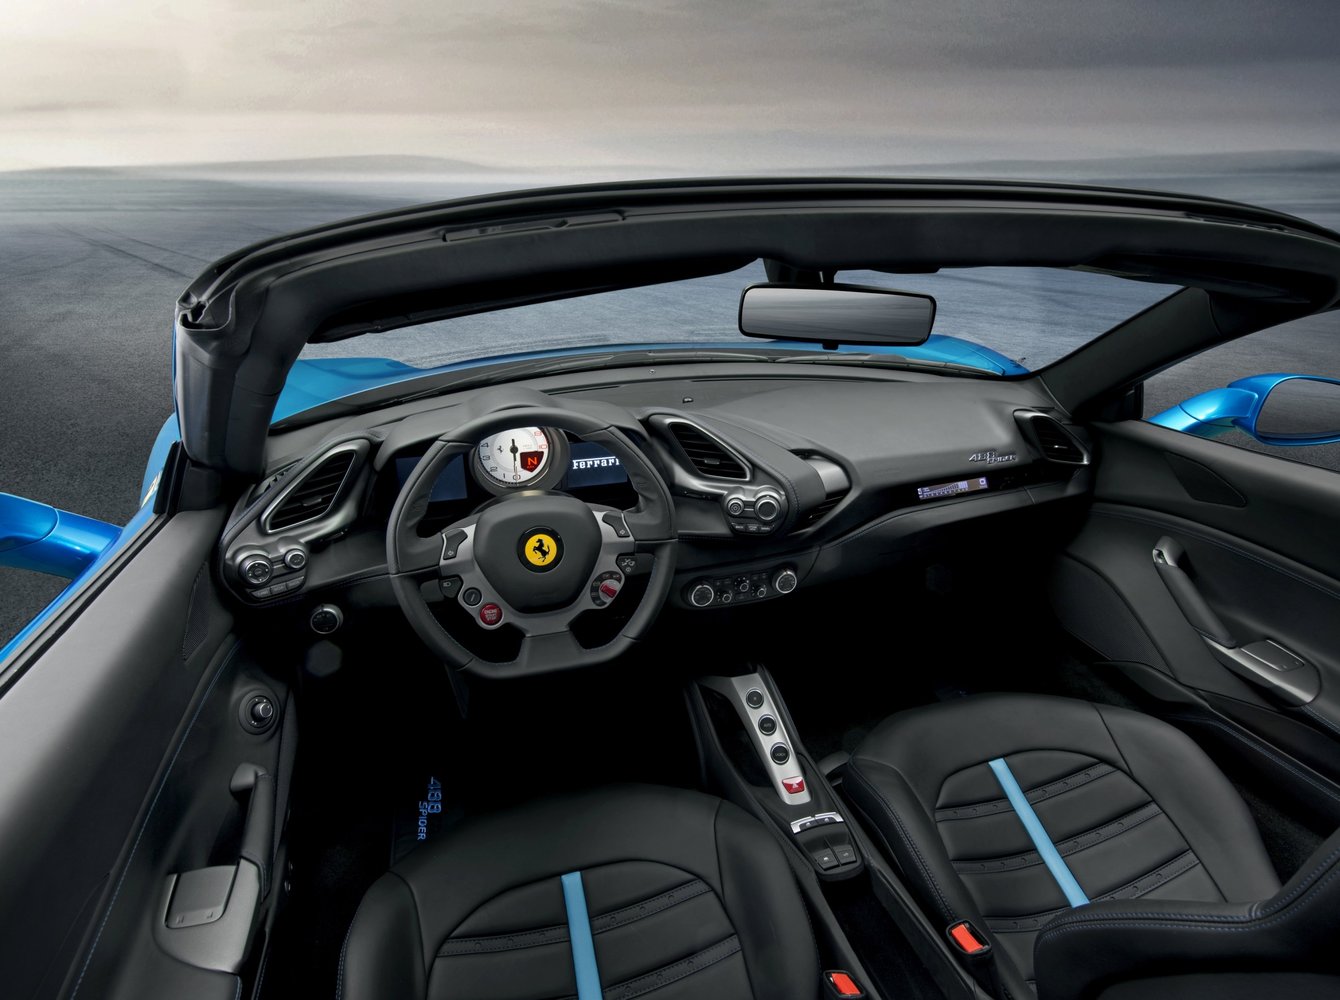 кабриолет Spider Ferrari 488 2015 - 2016г выпуска модификация 3.9 AMT (670 л.с.)